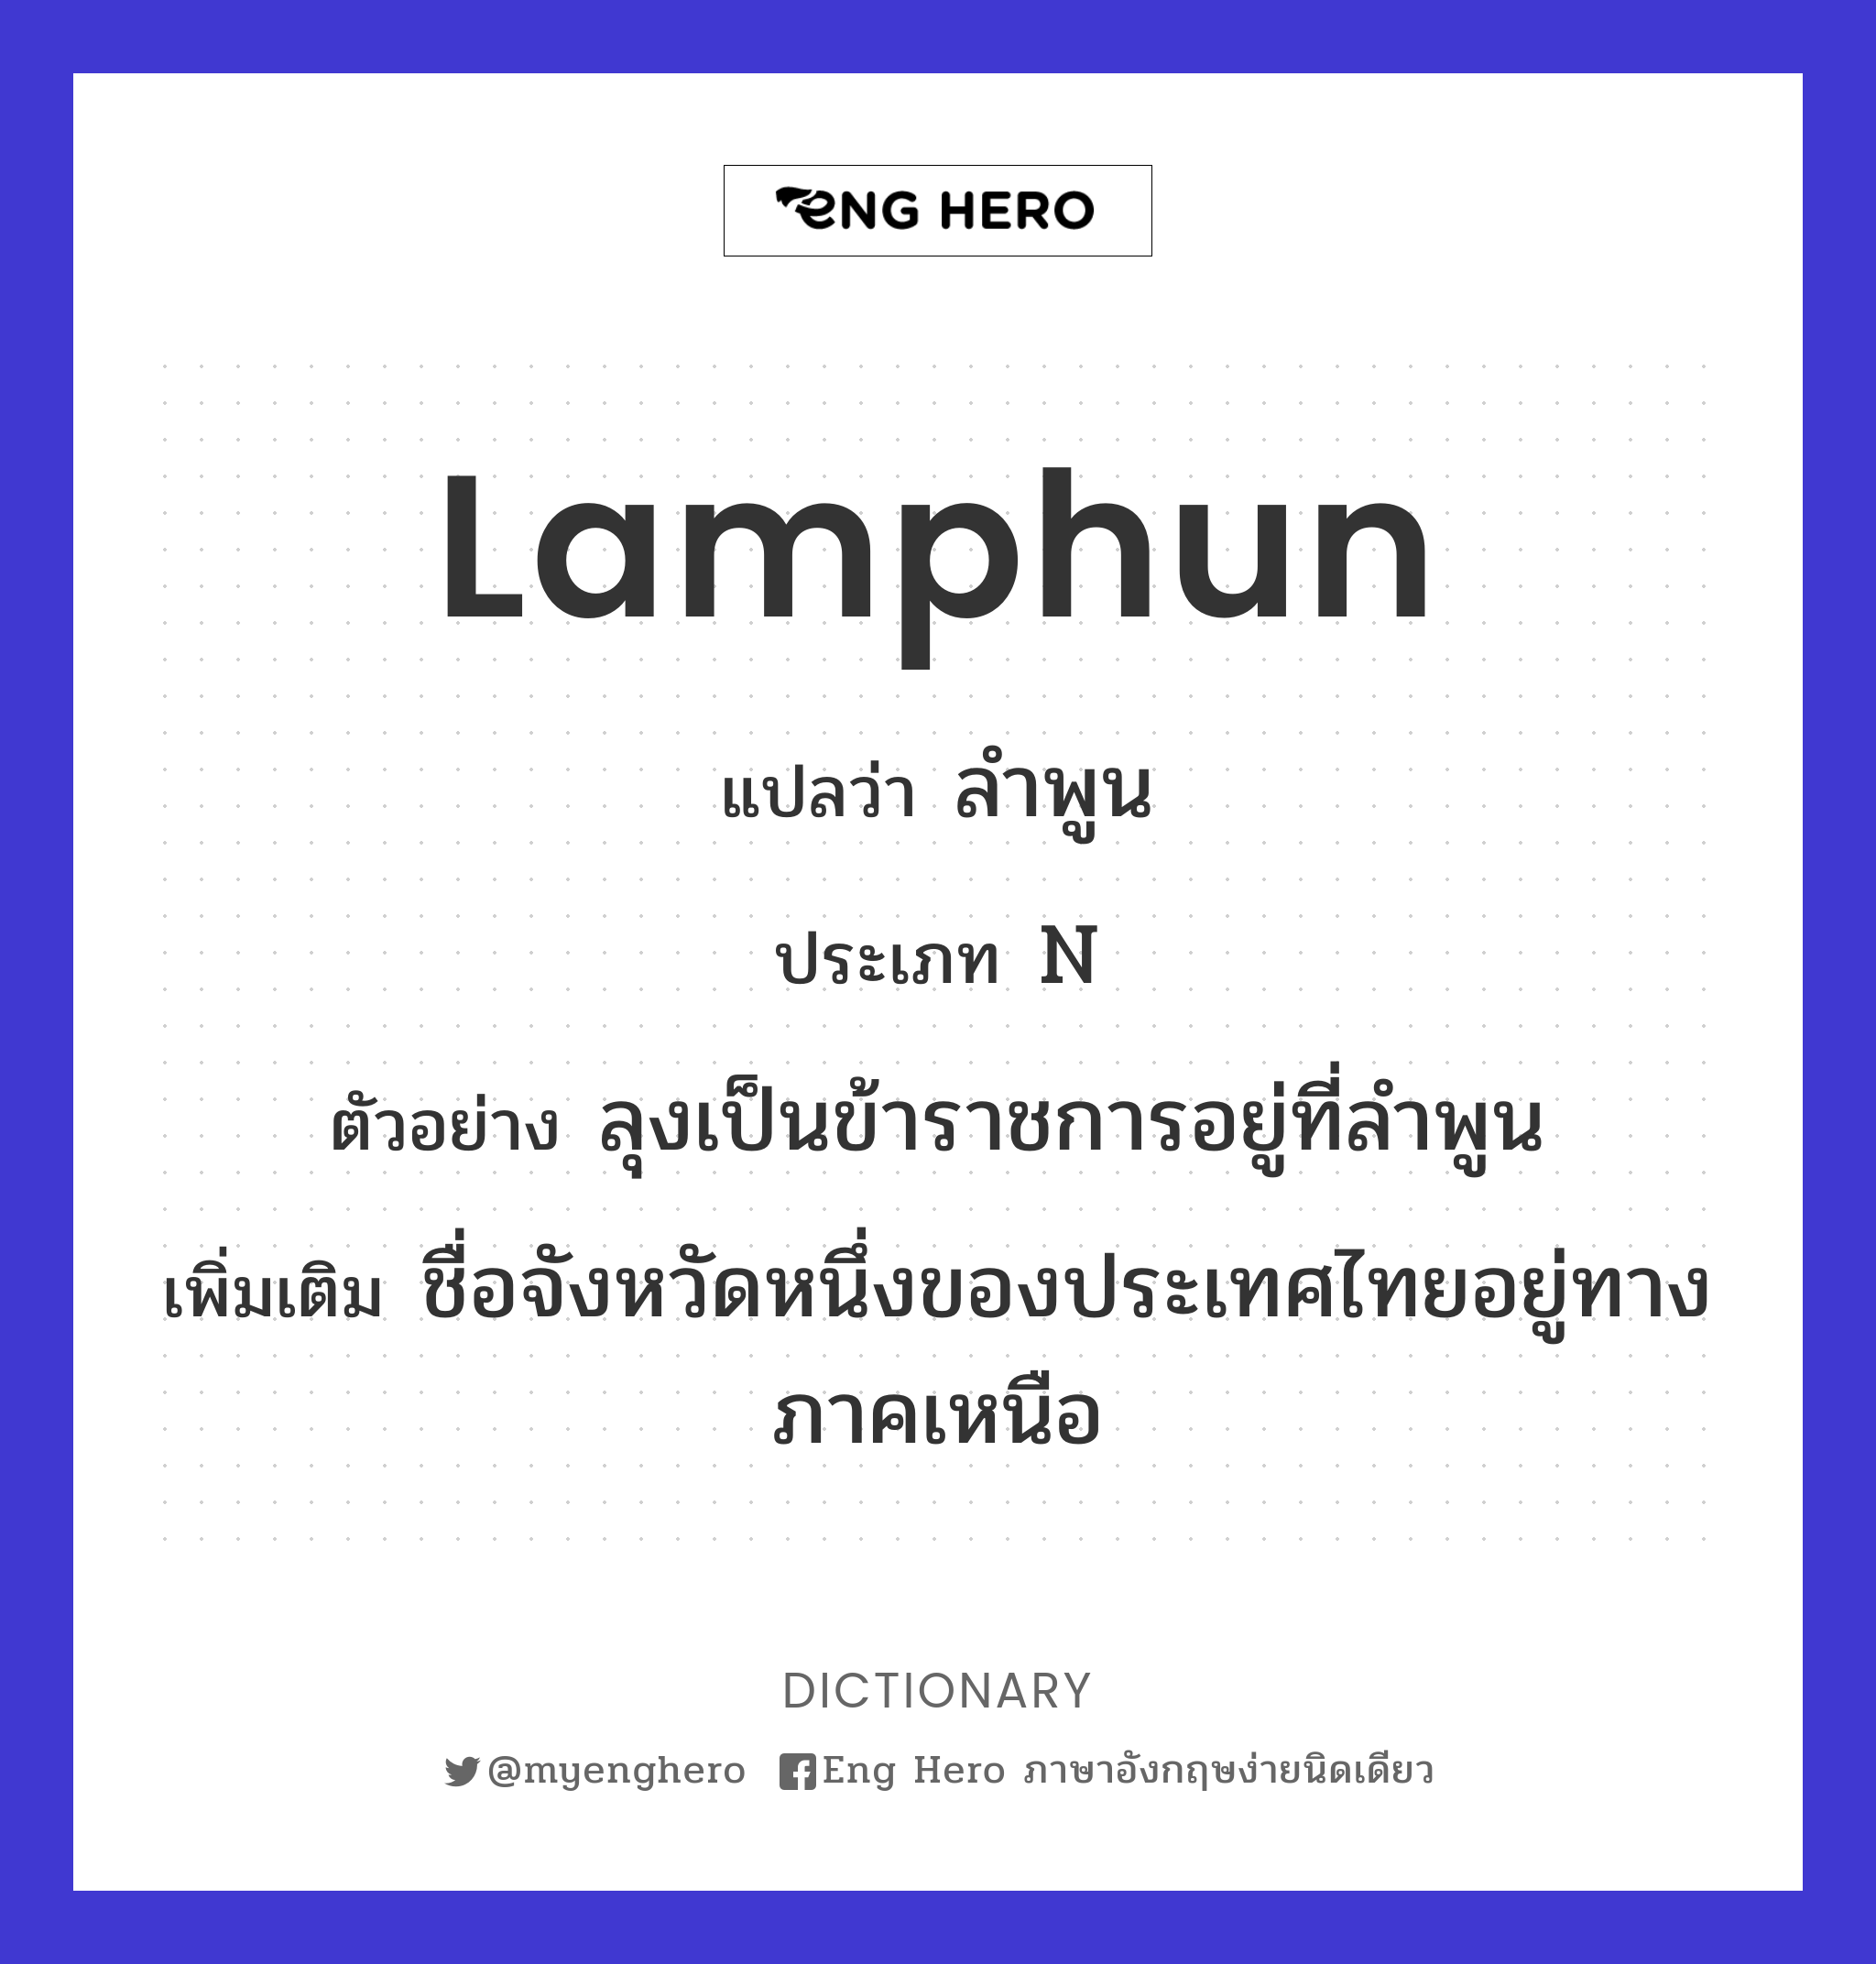 Lamphun